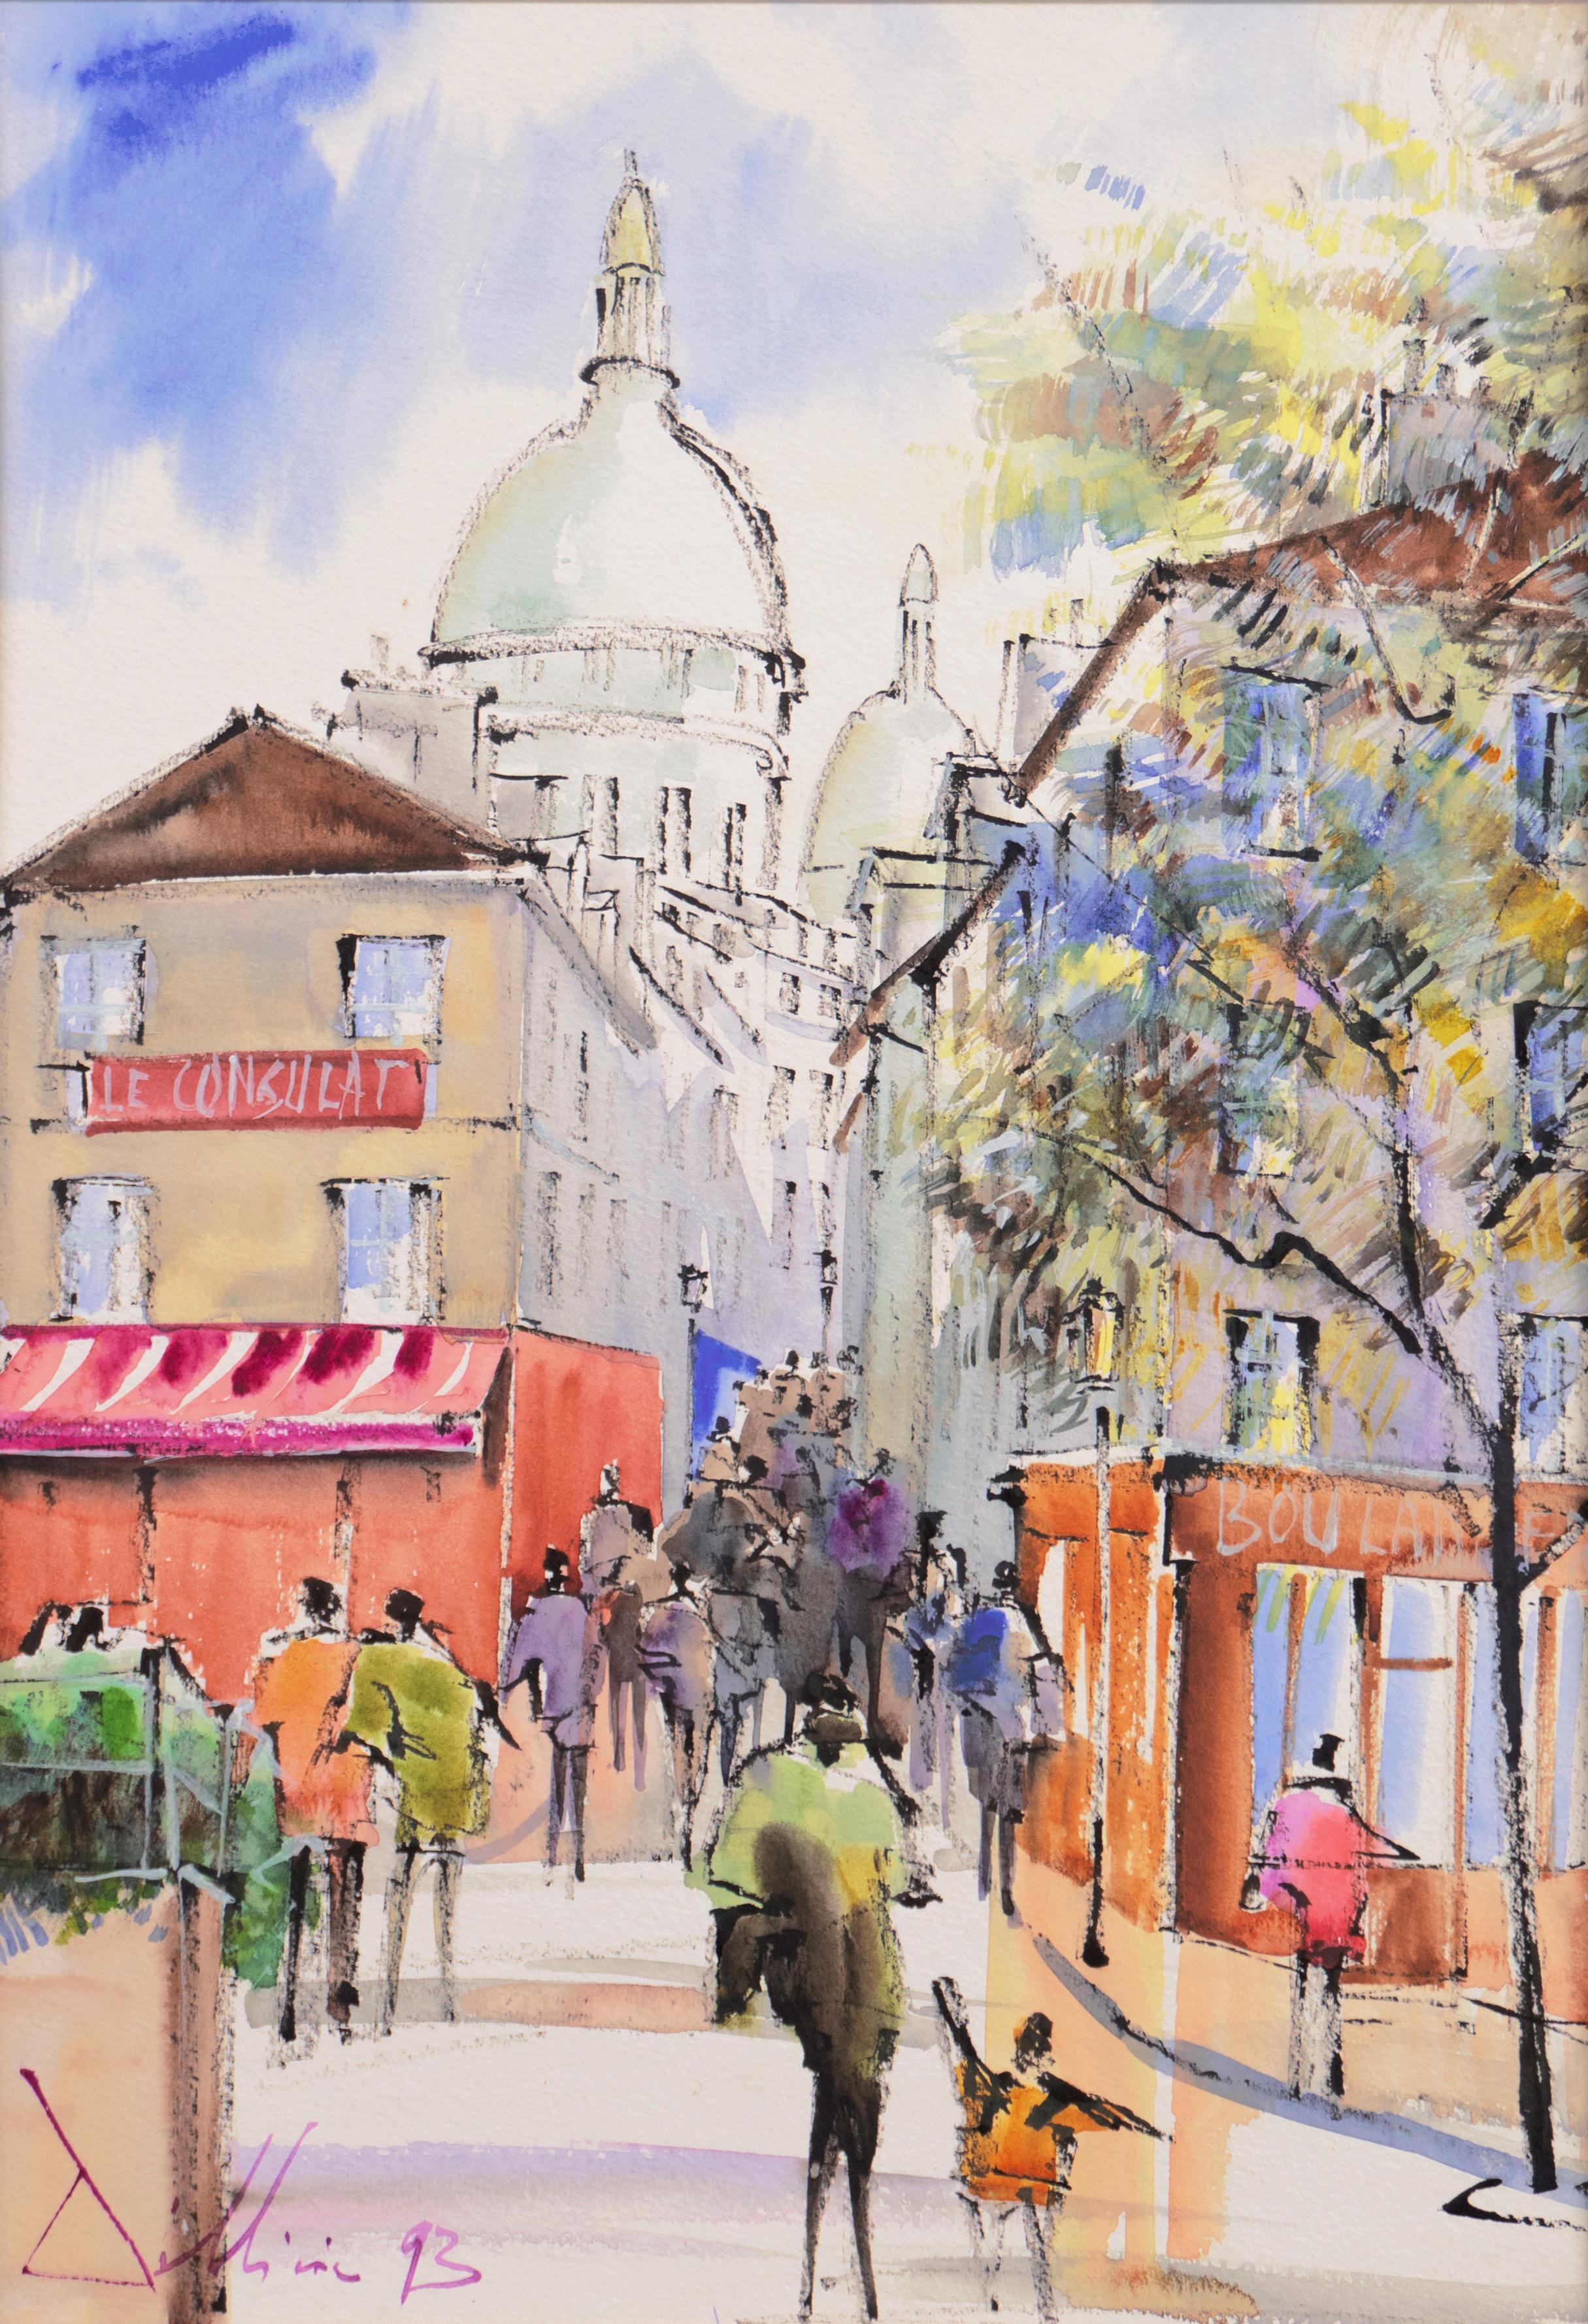 20th Century French School Landscape Art - 'Le Consulat, Montmartre', Paris Cafe, Cathedral of Sacré-Cœur, Basilica